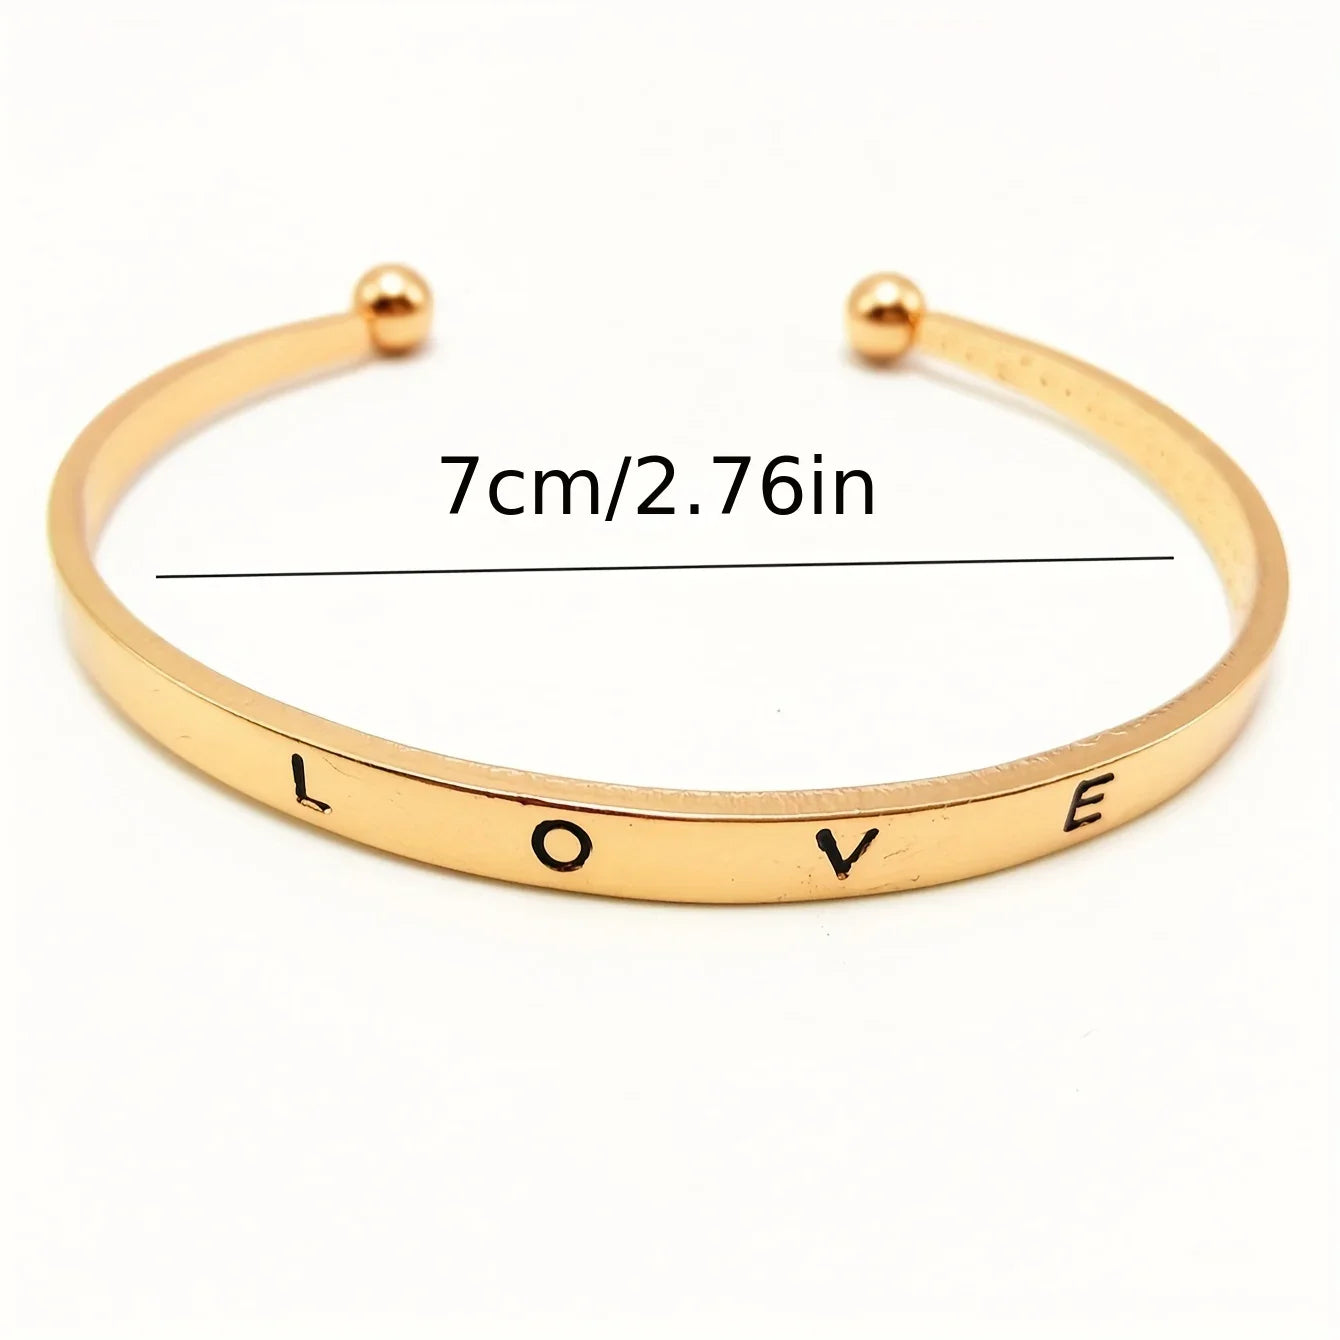 Women's Quartz Watch & LOVE 2 Pcs Bracelet Set